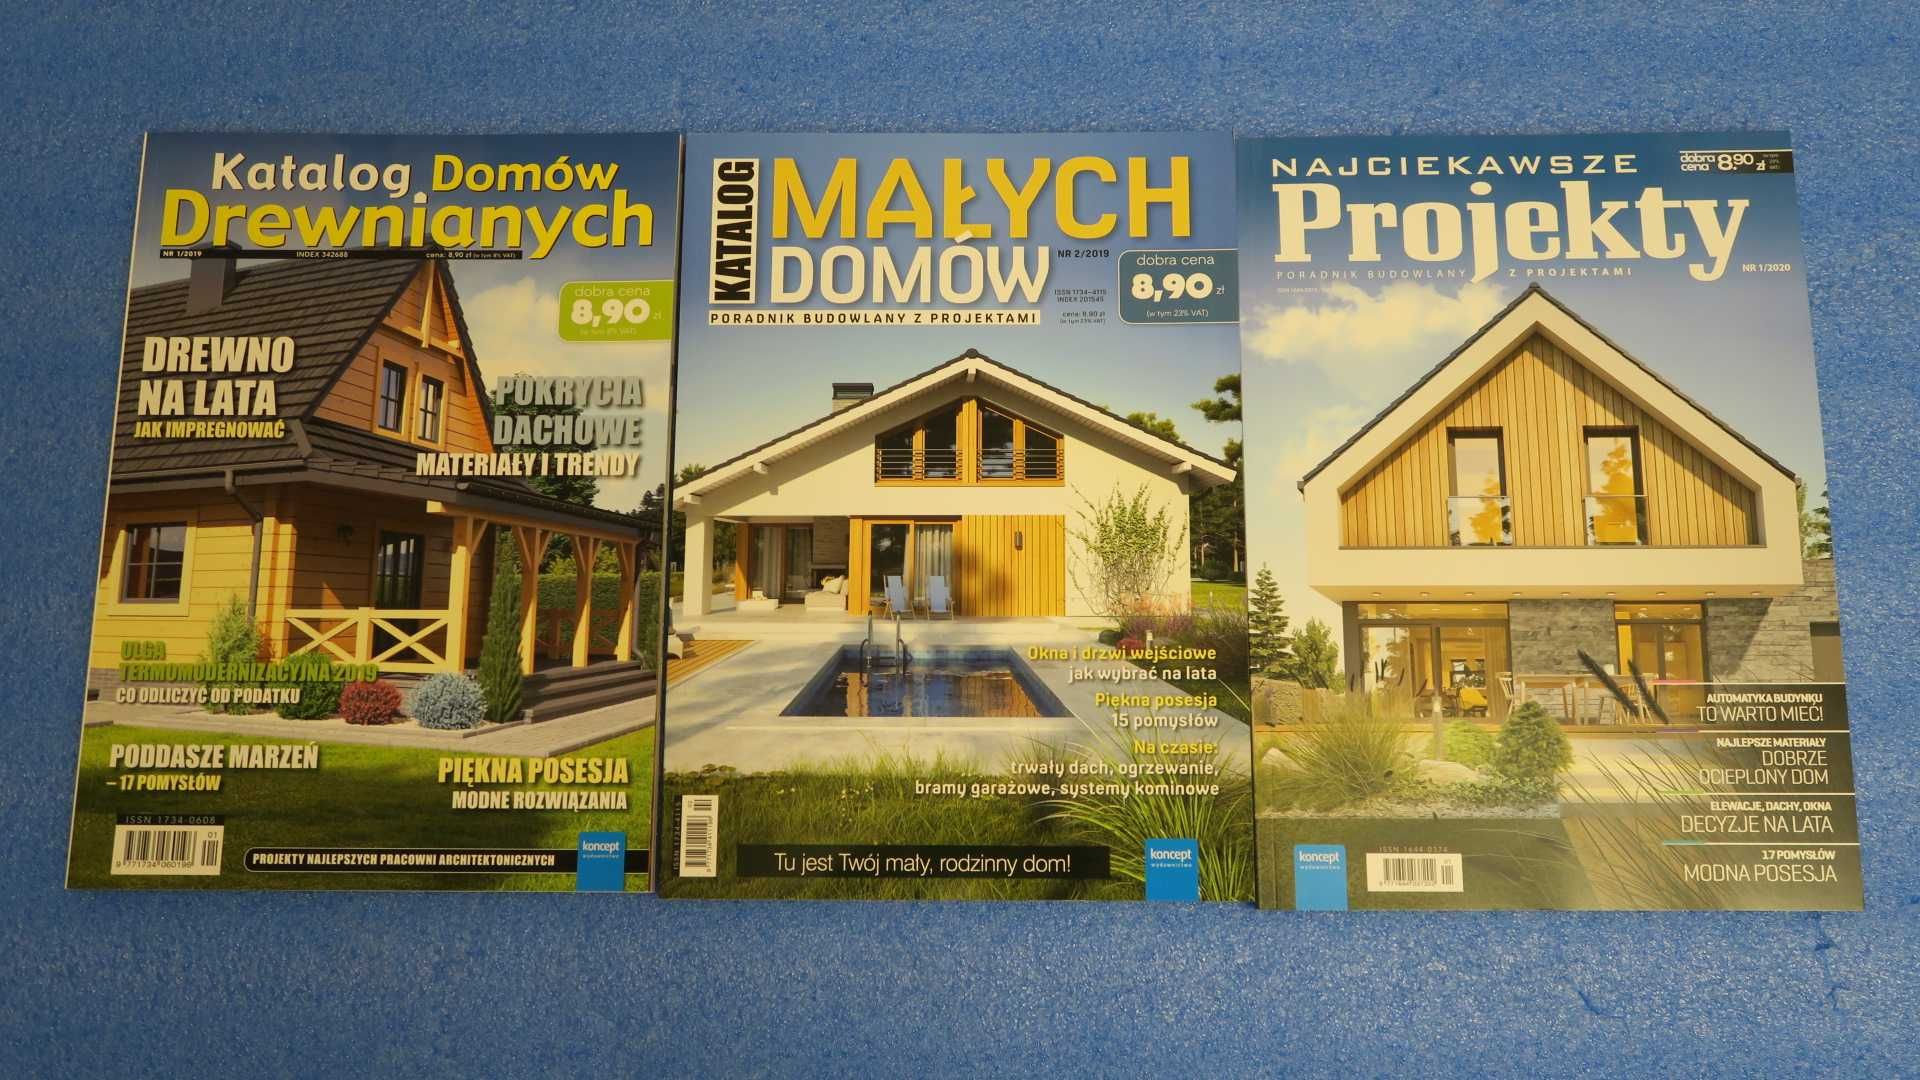 Katalog domów drewnianych, małych domów, projekty, poradnik budowlany